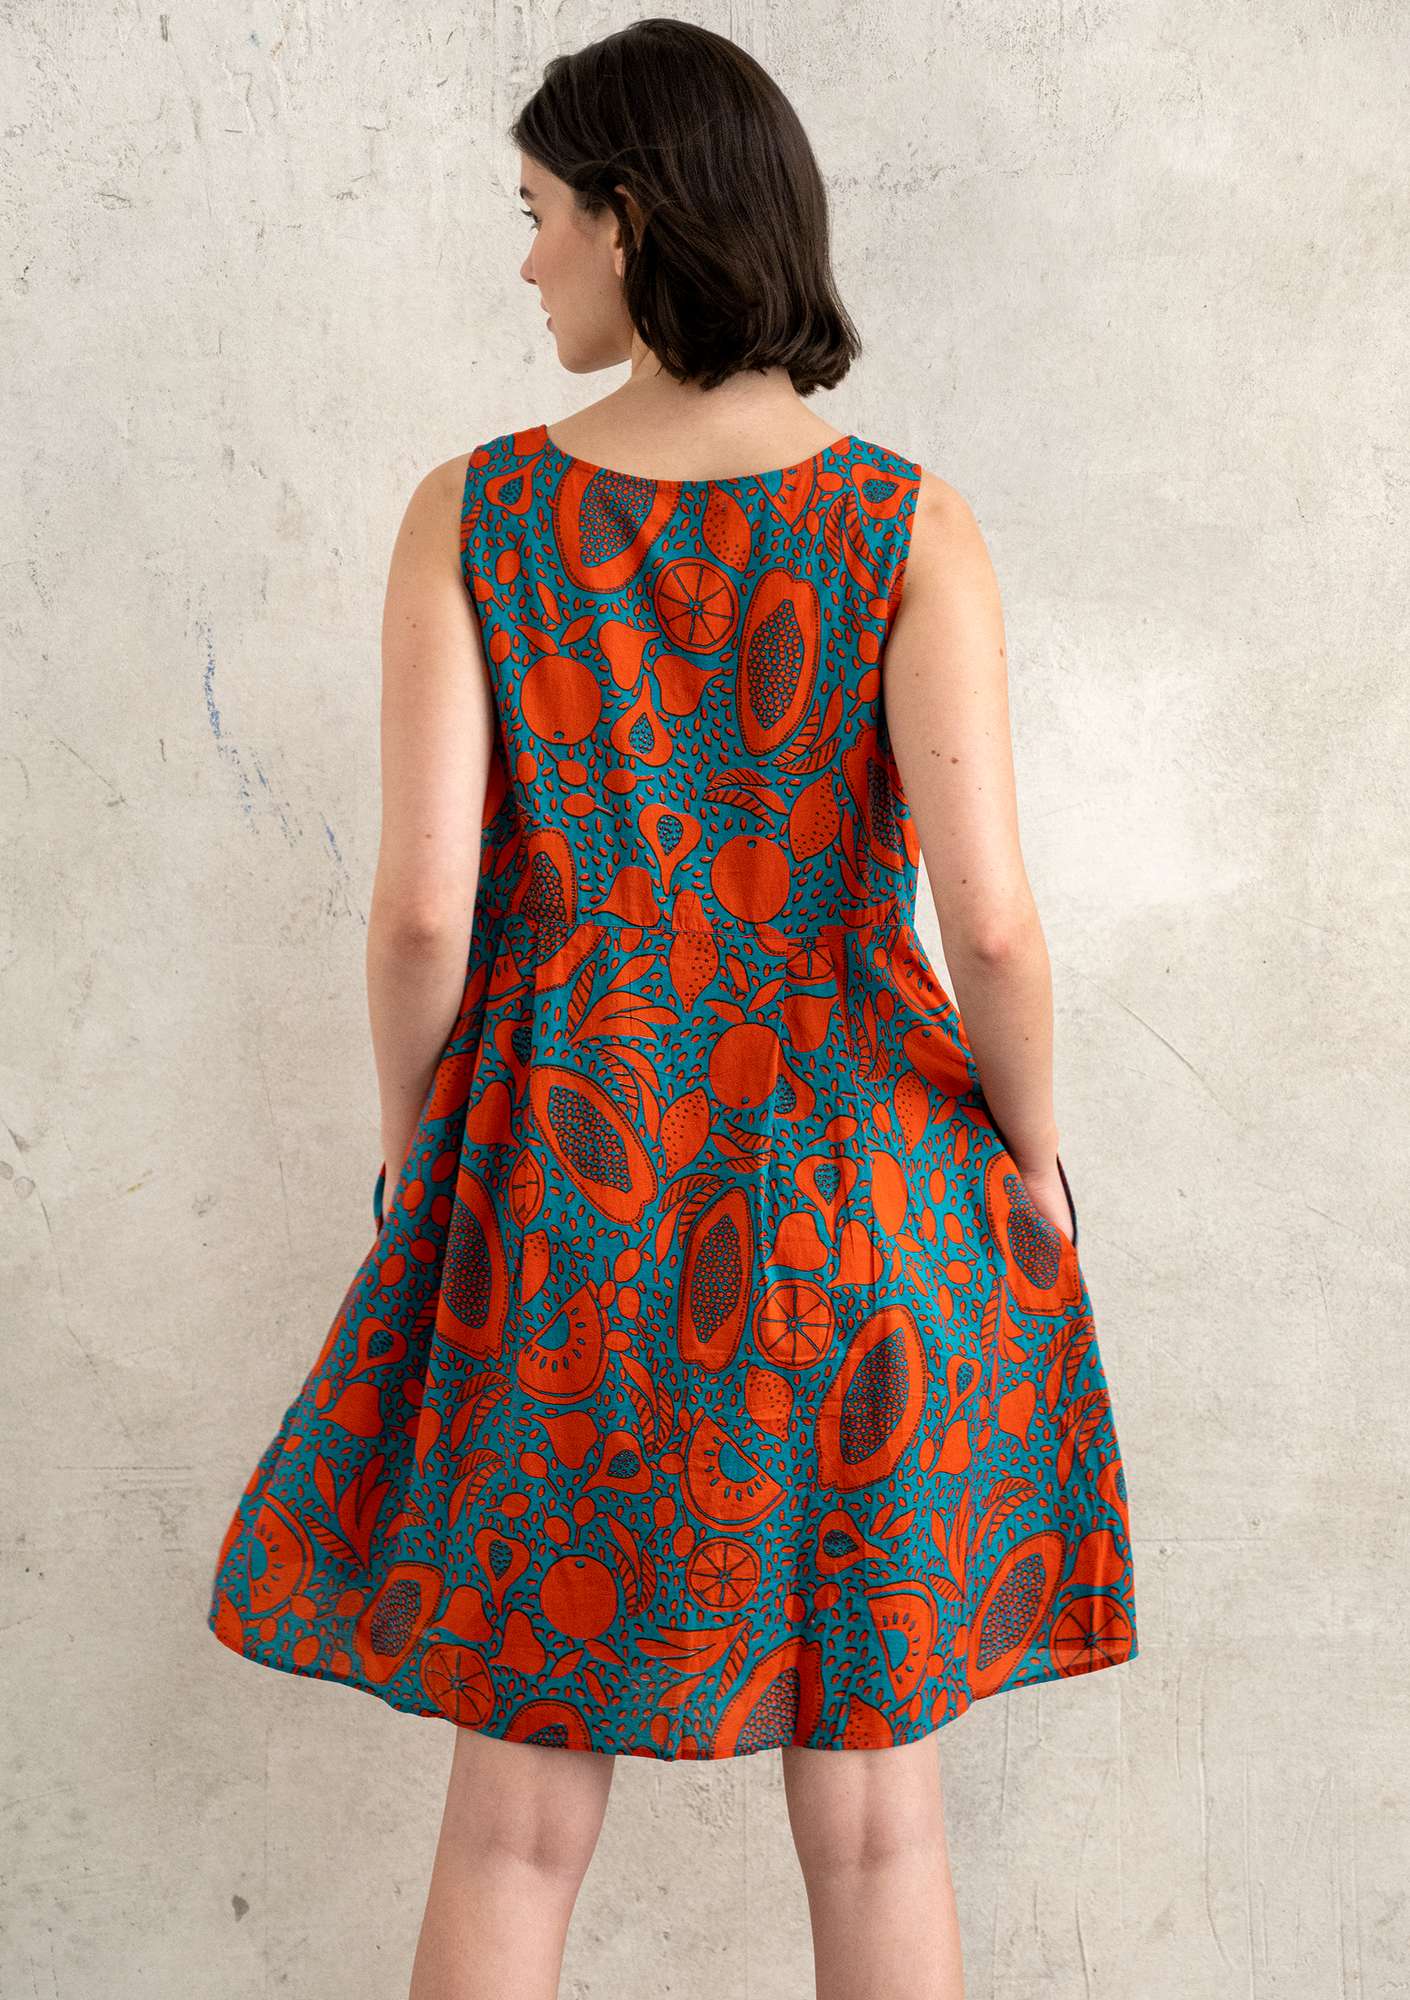 Geweven jurk  Marimba  van biologisch katoen lavarood